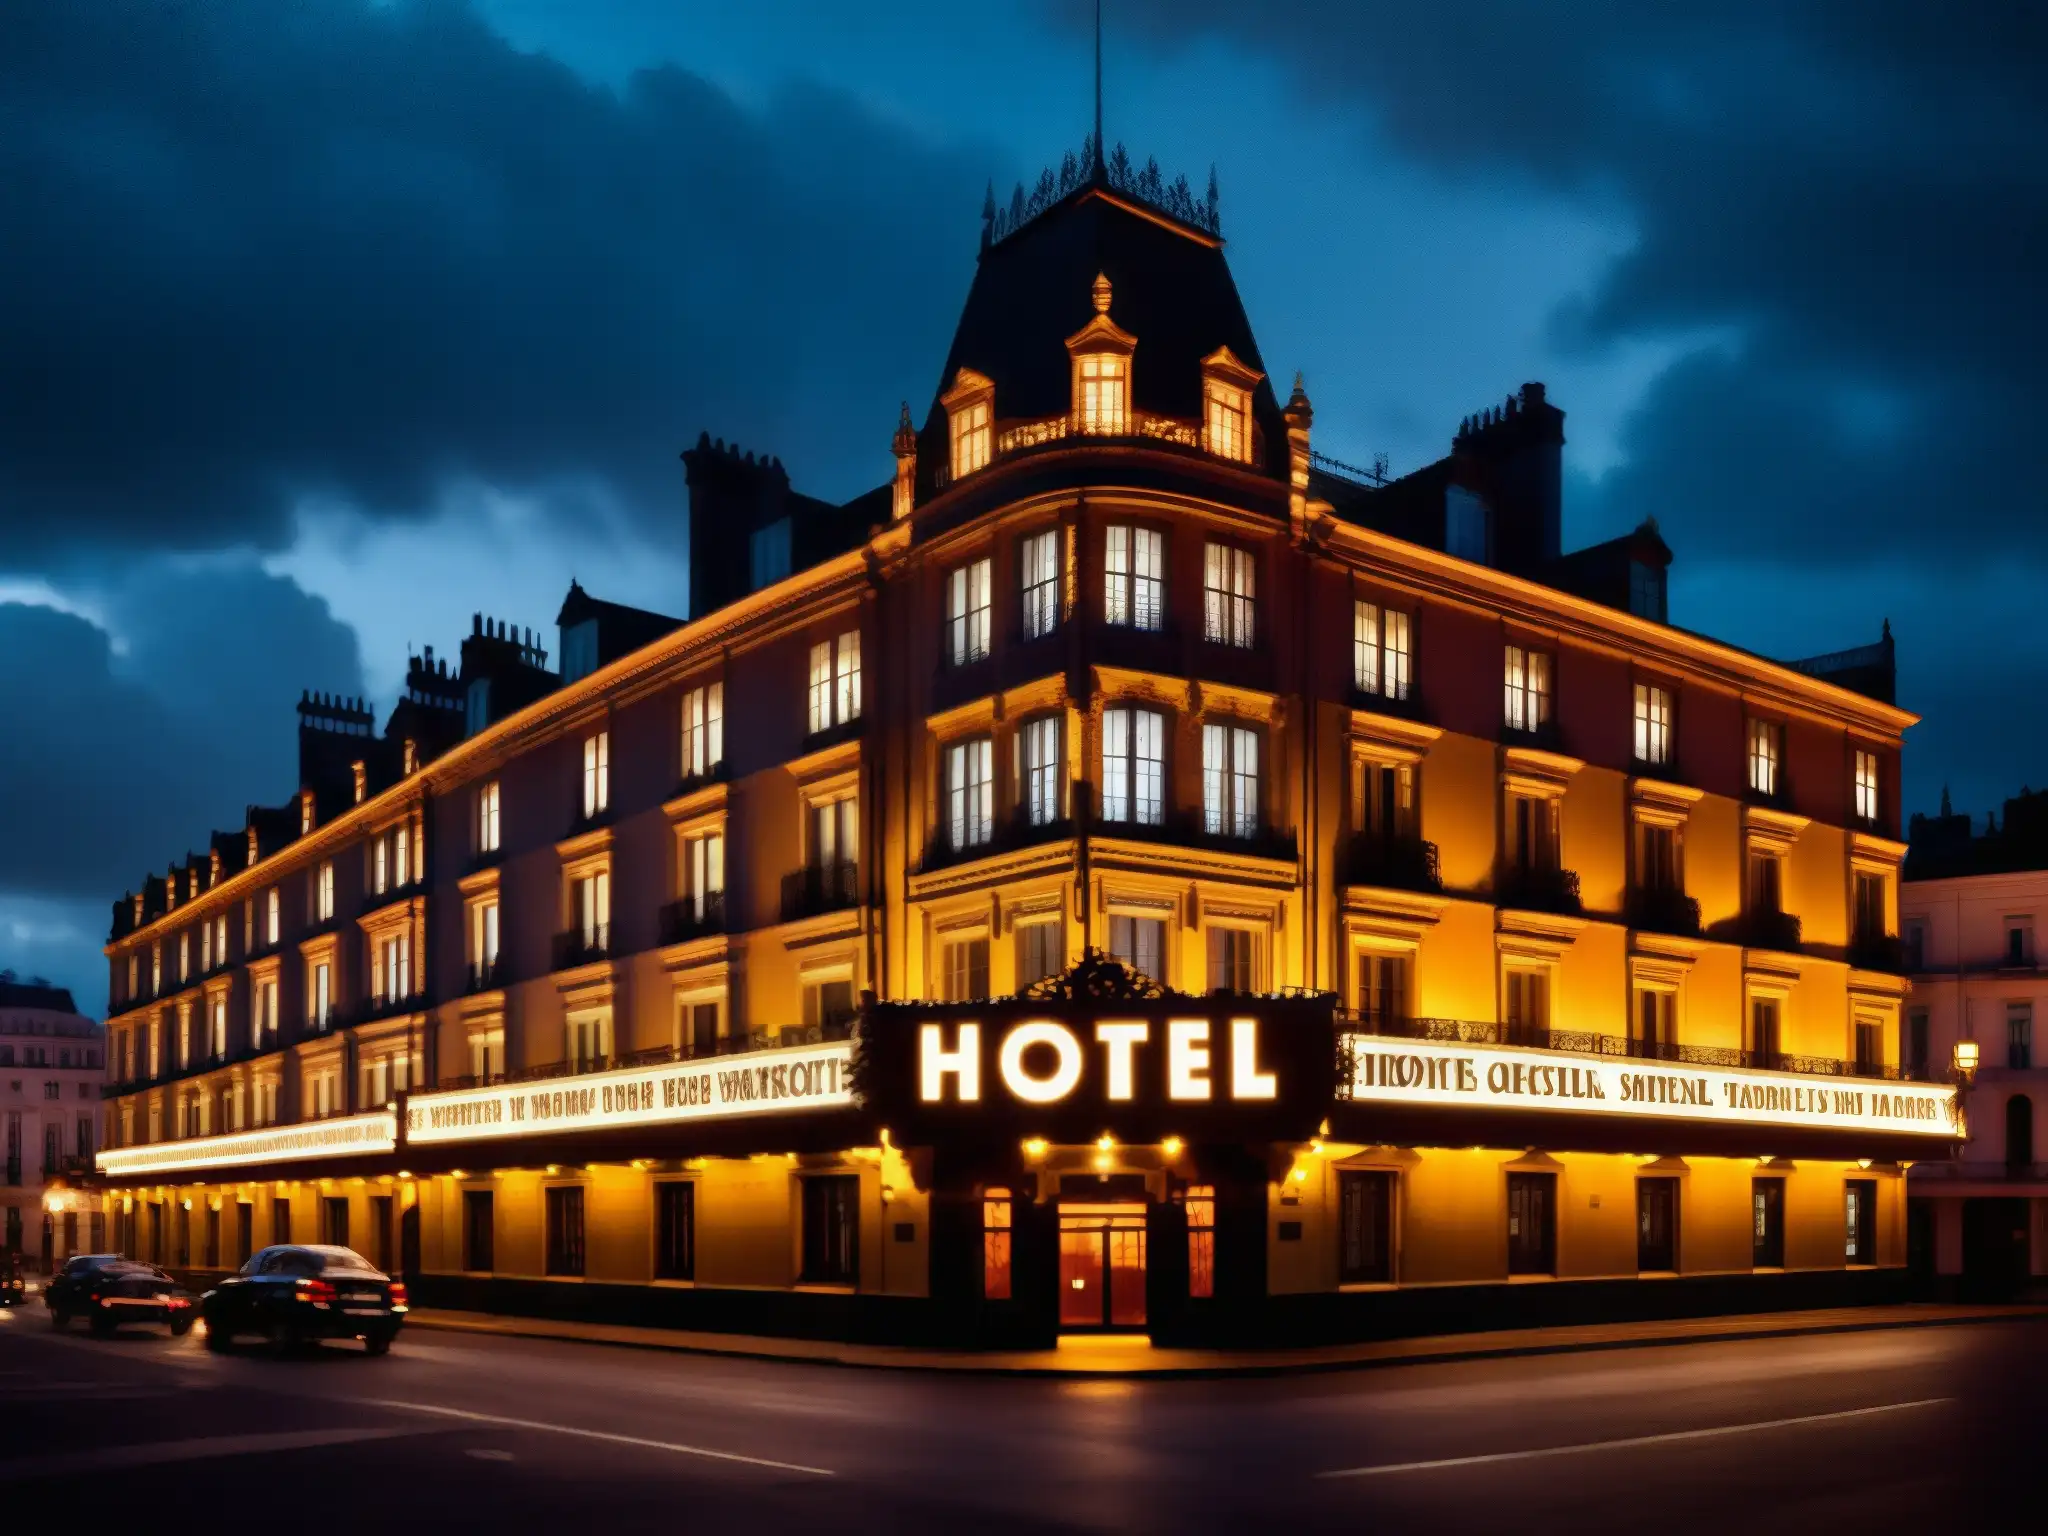 Imponente arquitectura y ambiente inquietante del Hotel Cecil, con cielo ominoso y misteriosa señal de neón